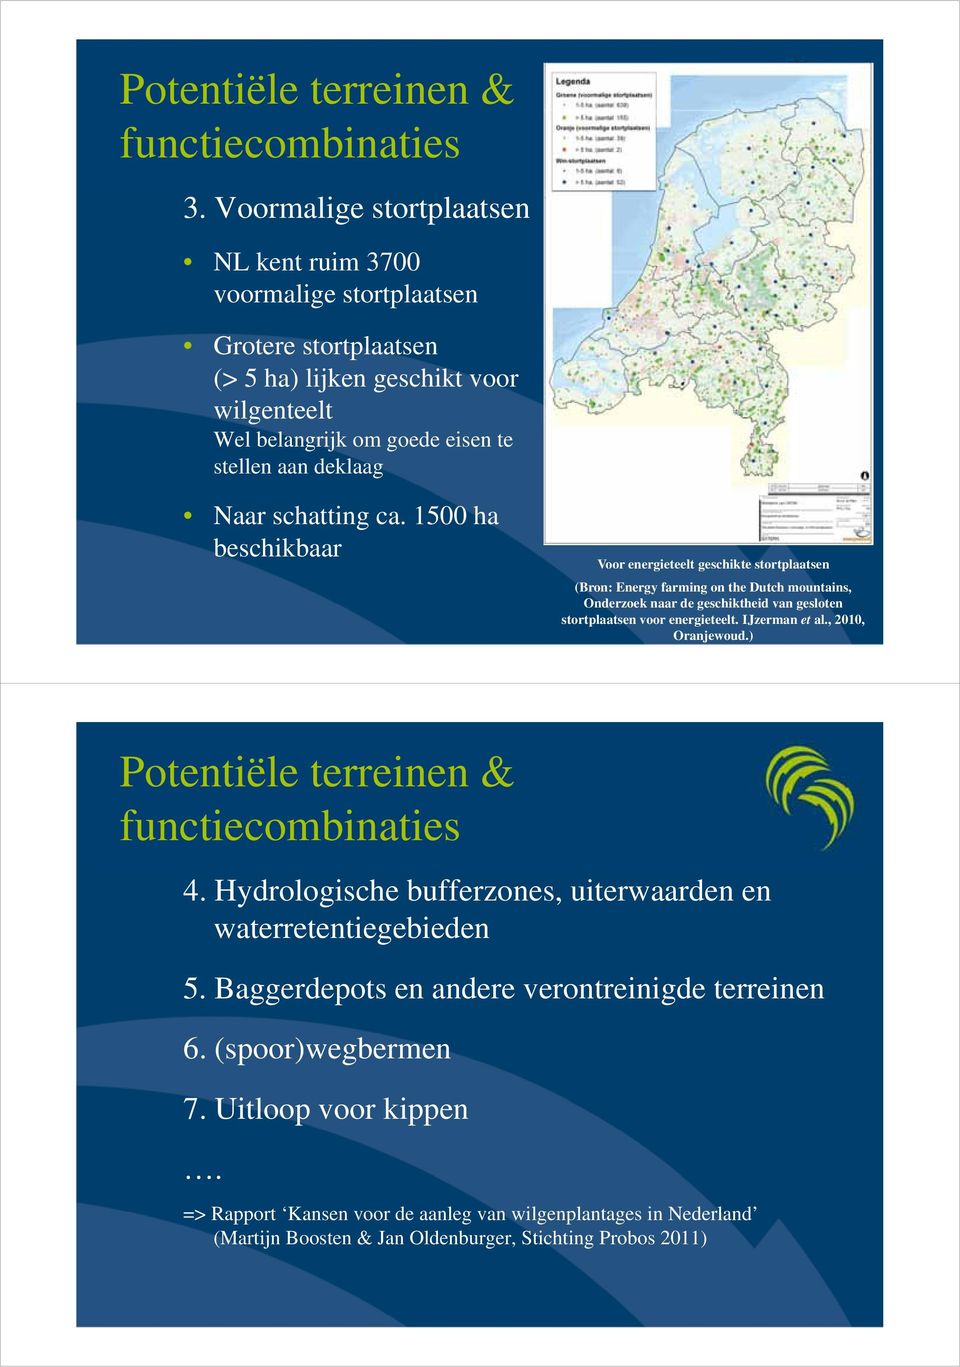 ca. 1500 ha beschikbaar Voor energieteelt geschikte stortplaatsen (Bron: Energy farming on the Dutch mountains, Onderzoek naar de geschiktheid van gesloten stortplaatsen voor energieteelt.